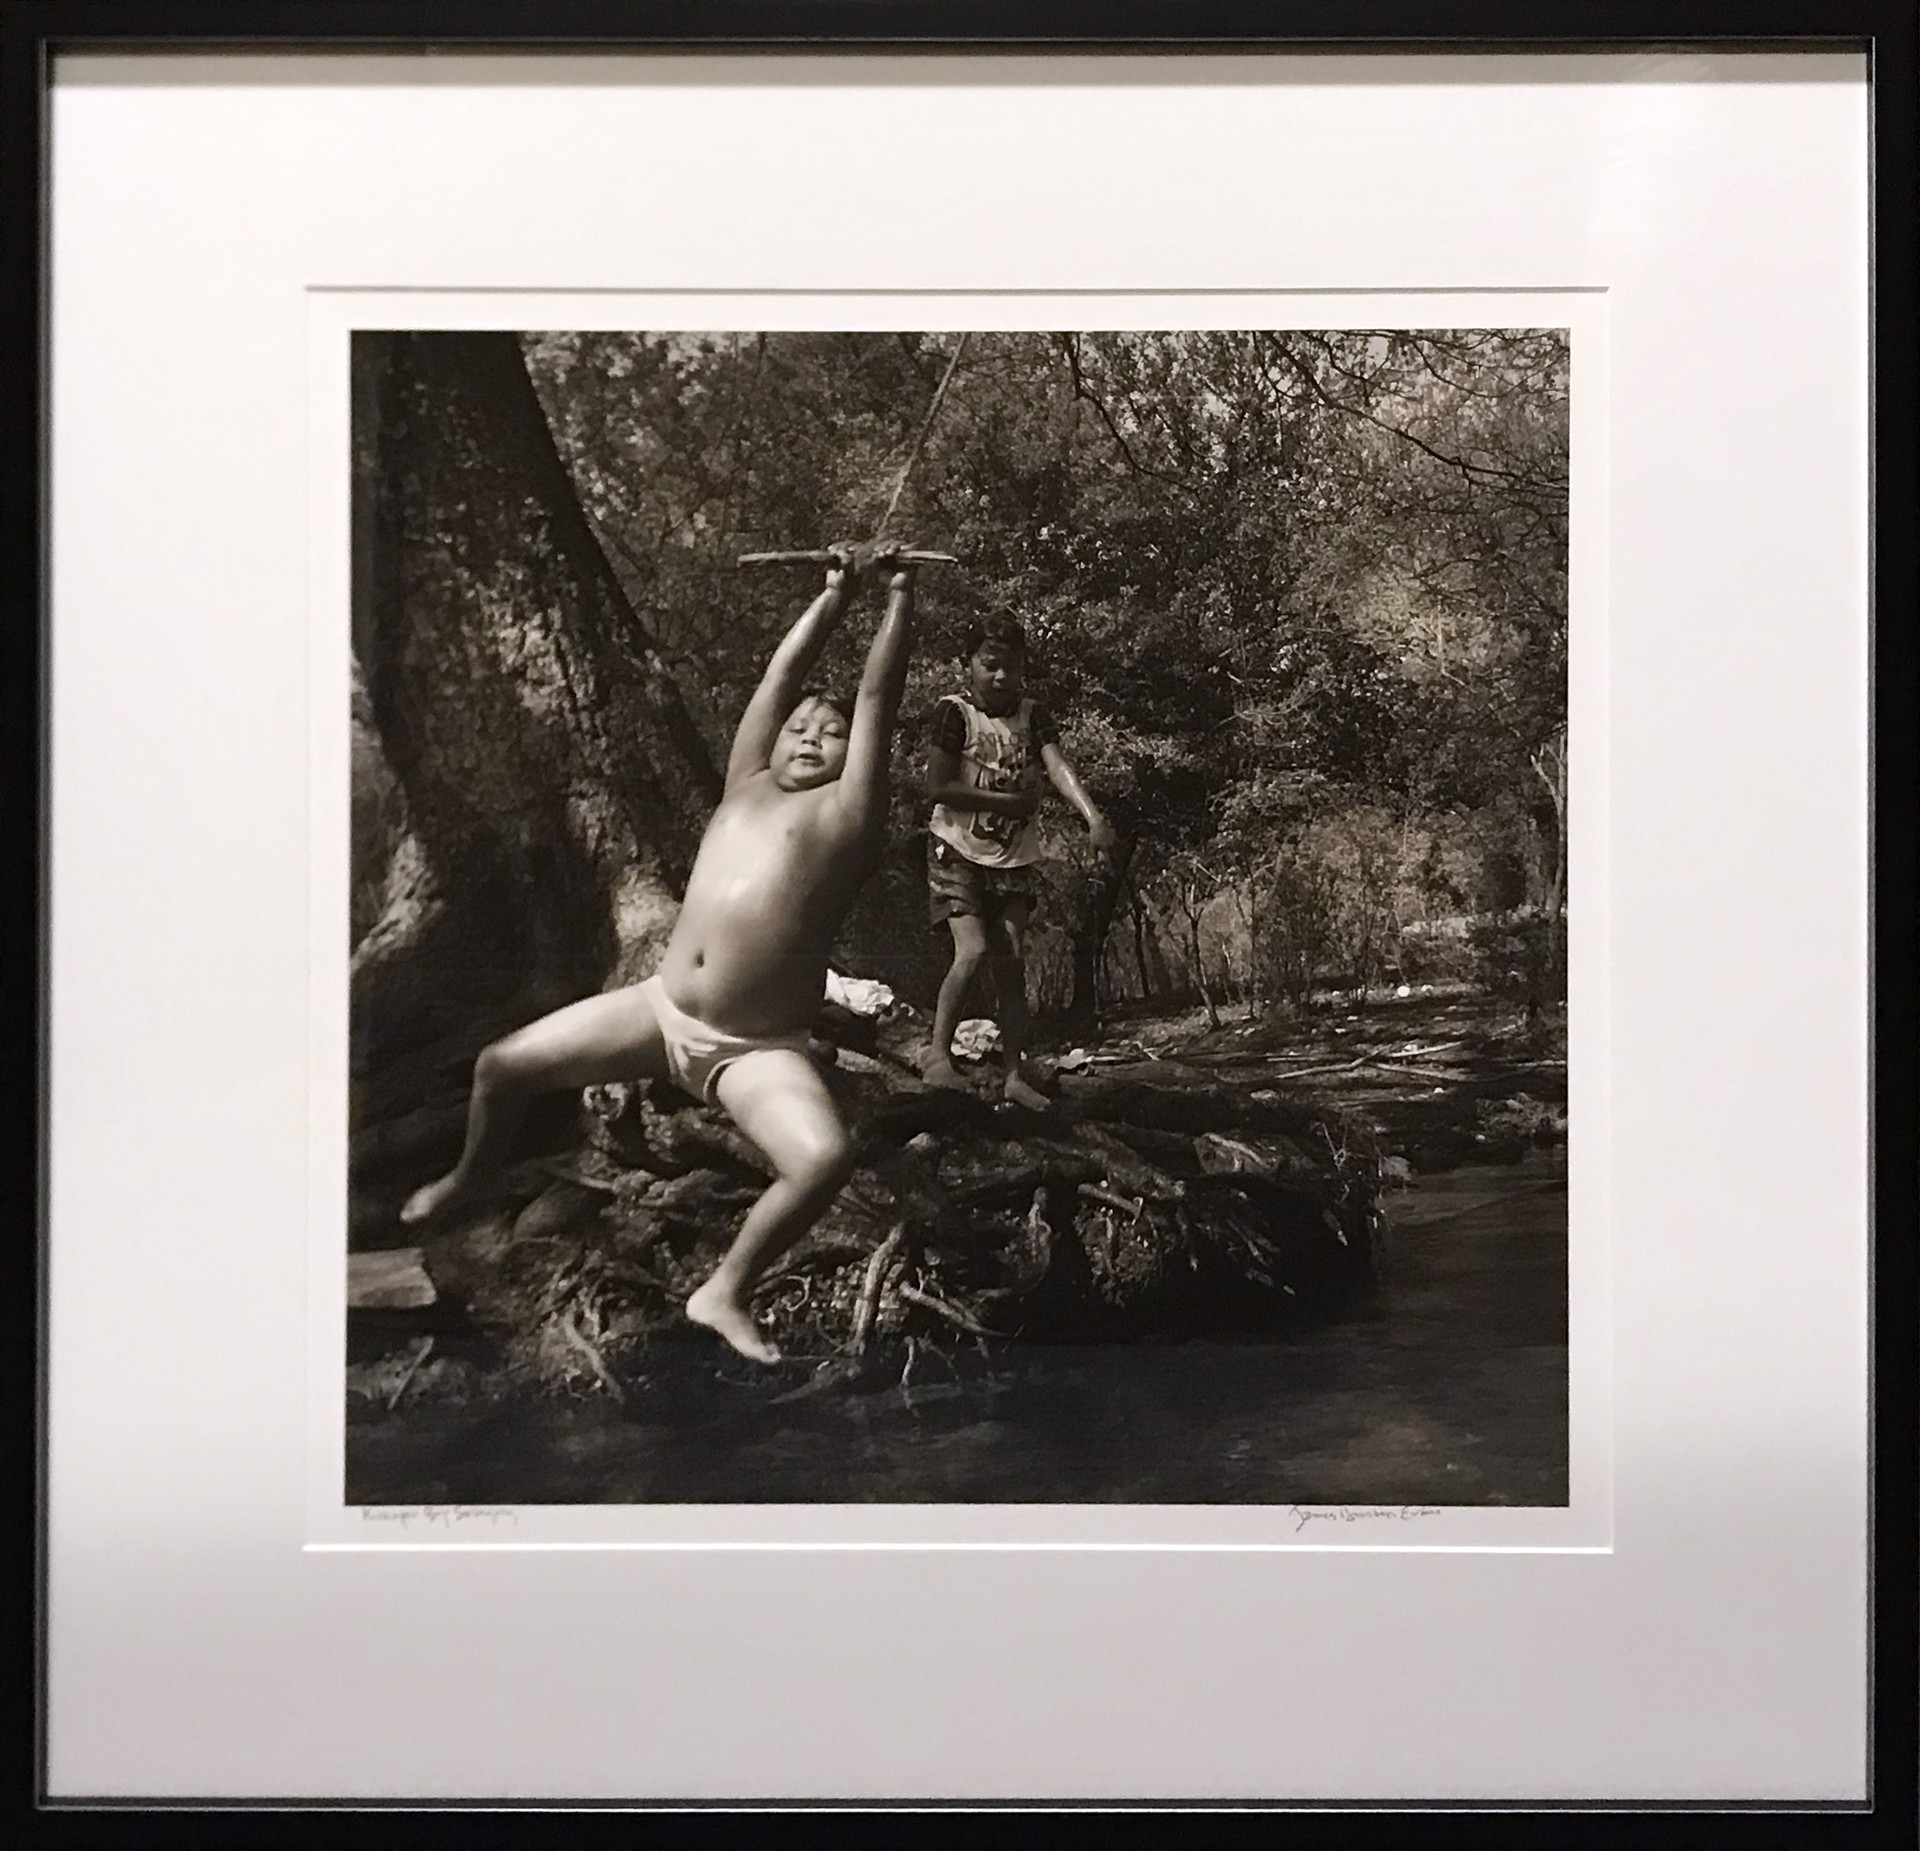 Kickapoo Boy Swinging, Nacimiento, Mexico by James H. Evans